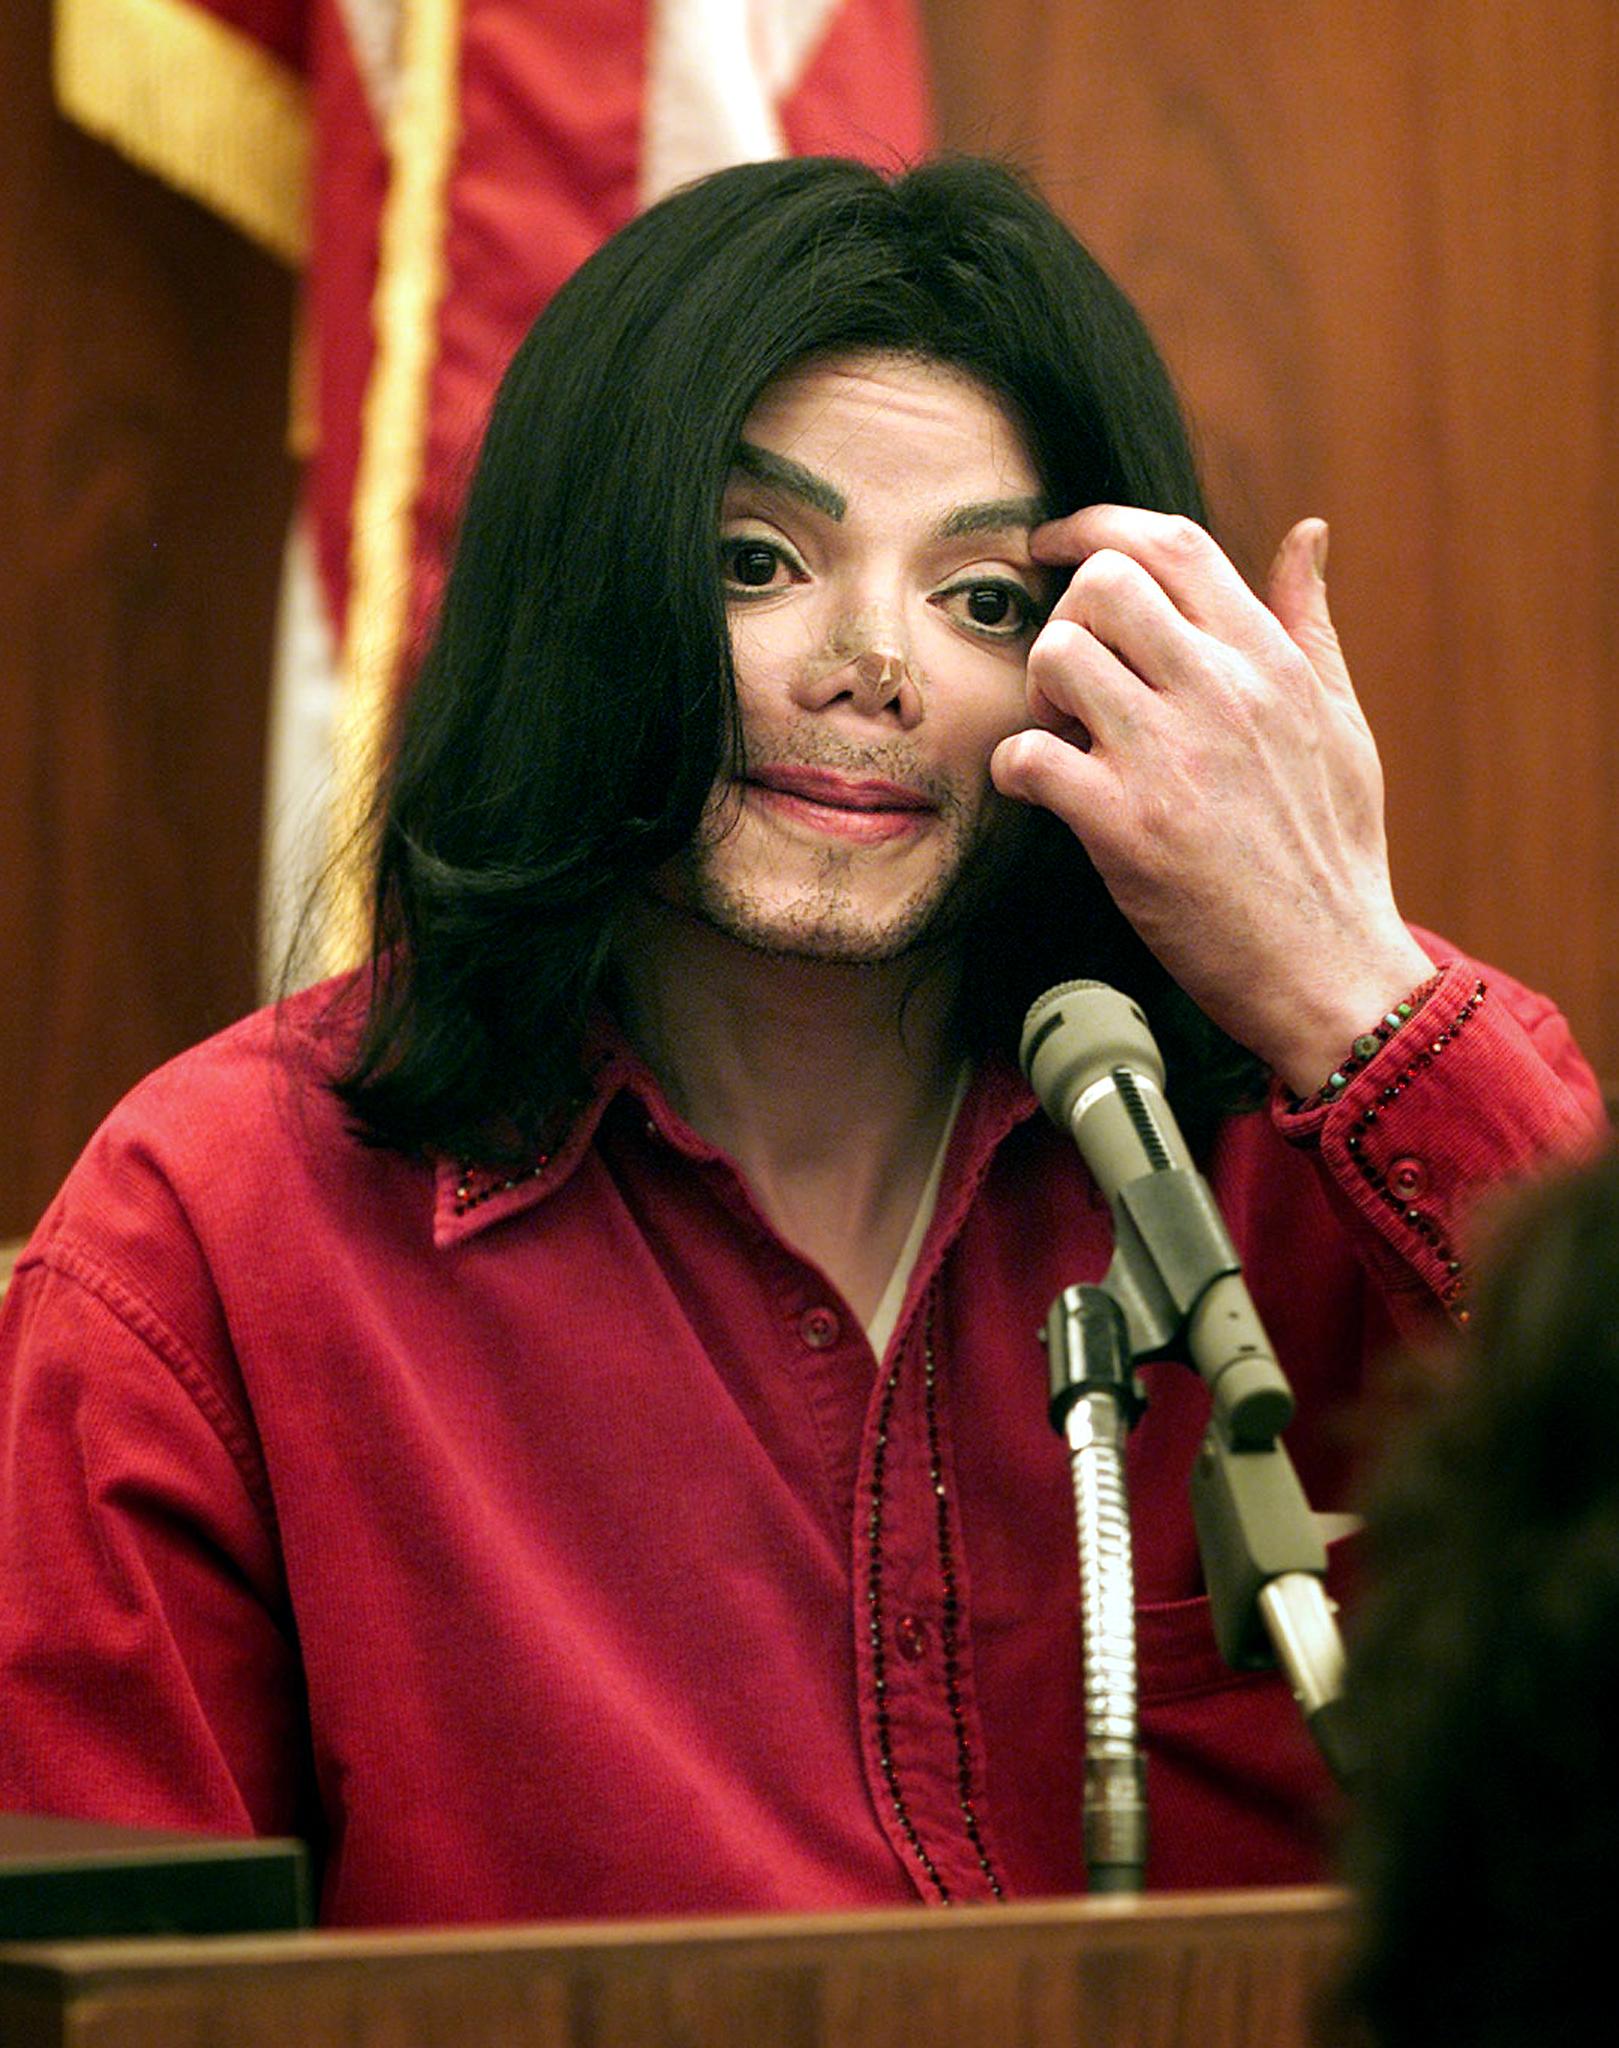 Michael Jackson en 2002 | Source : Getty Images